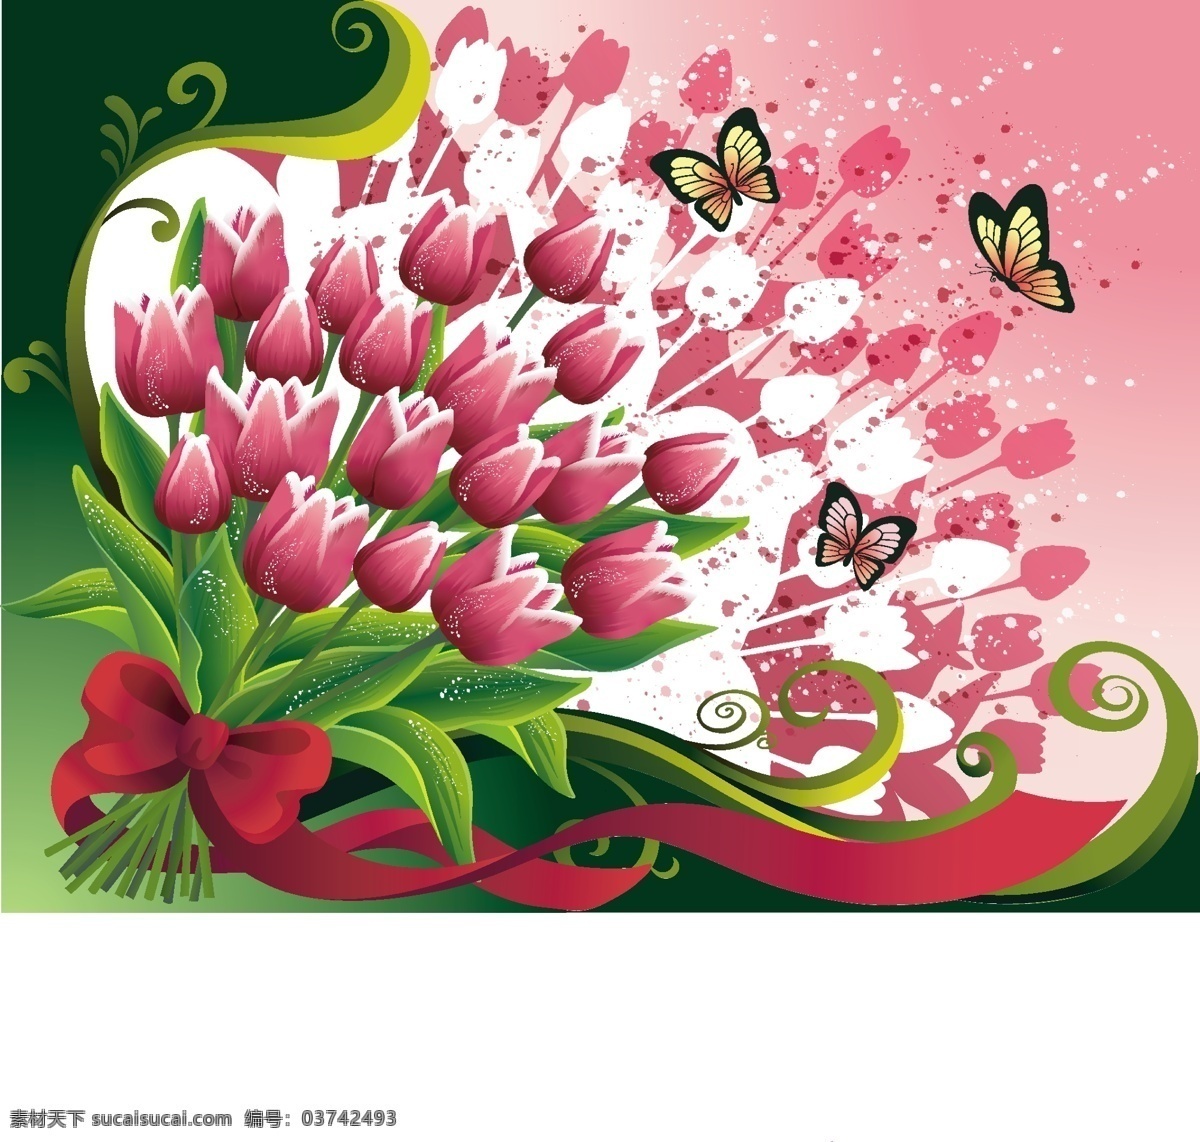 韩国矢量图案 郁金香 花卉 蝴蝶 卷材纹 韩国图案 底纹边框 背景底纹 白色